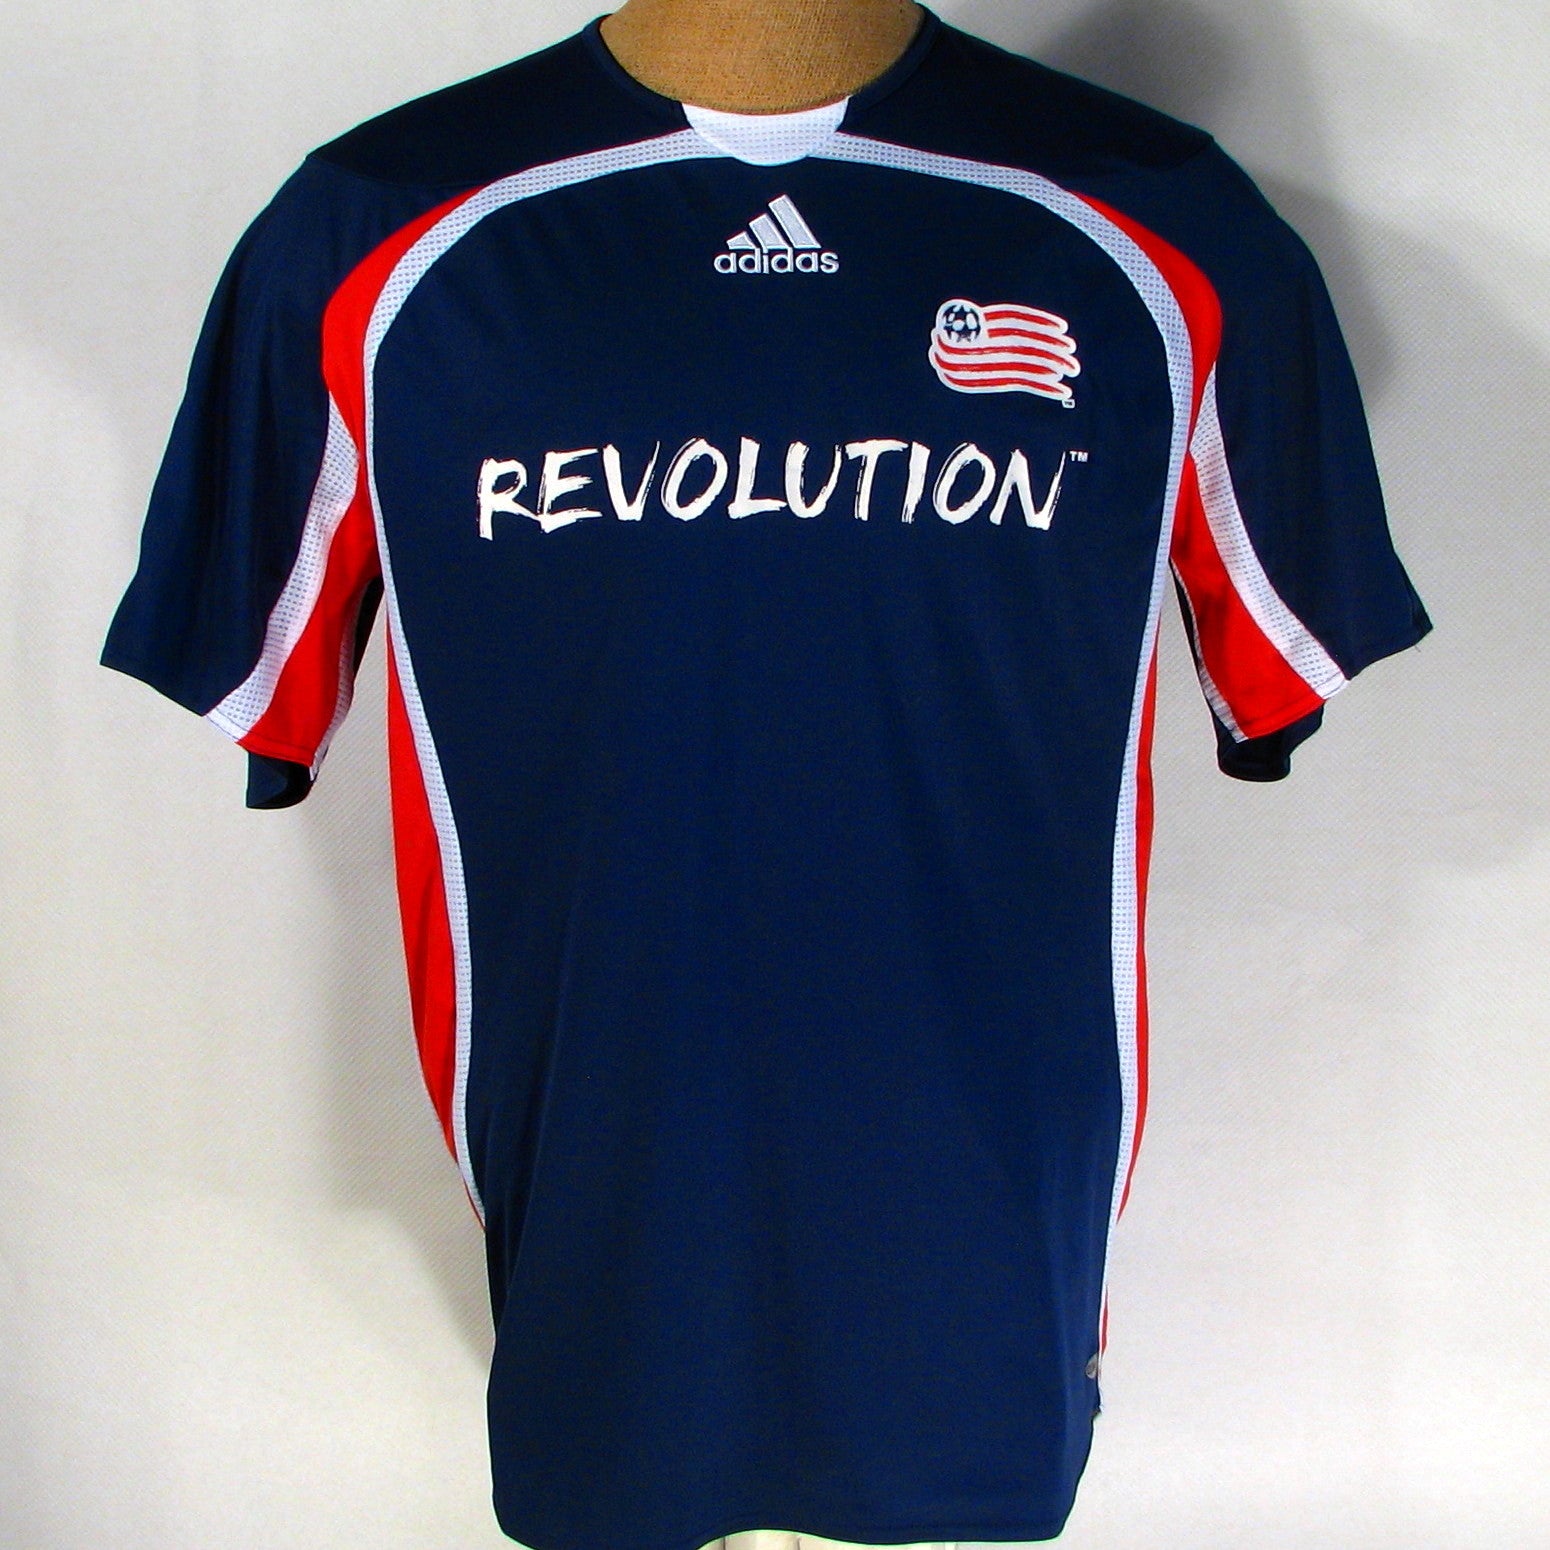 revolution soccer jersey